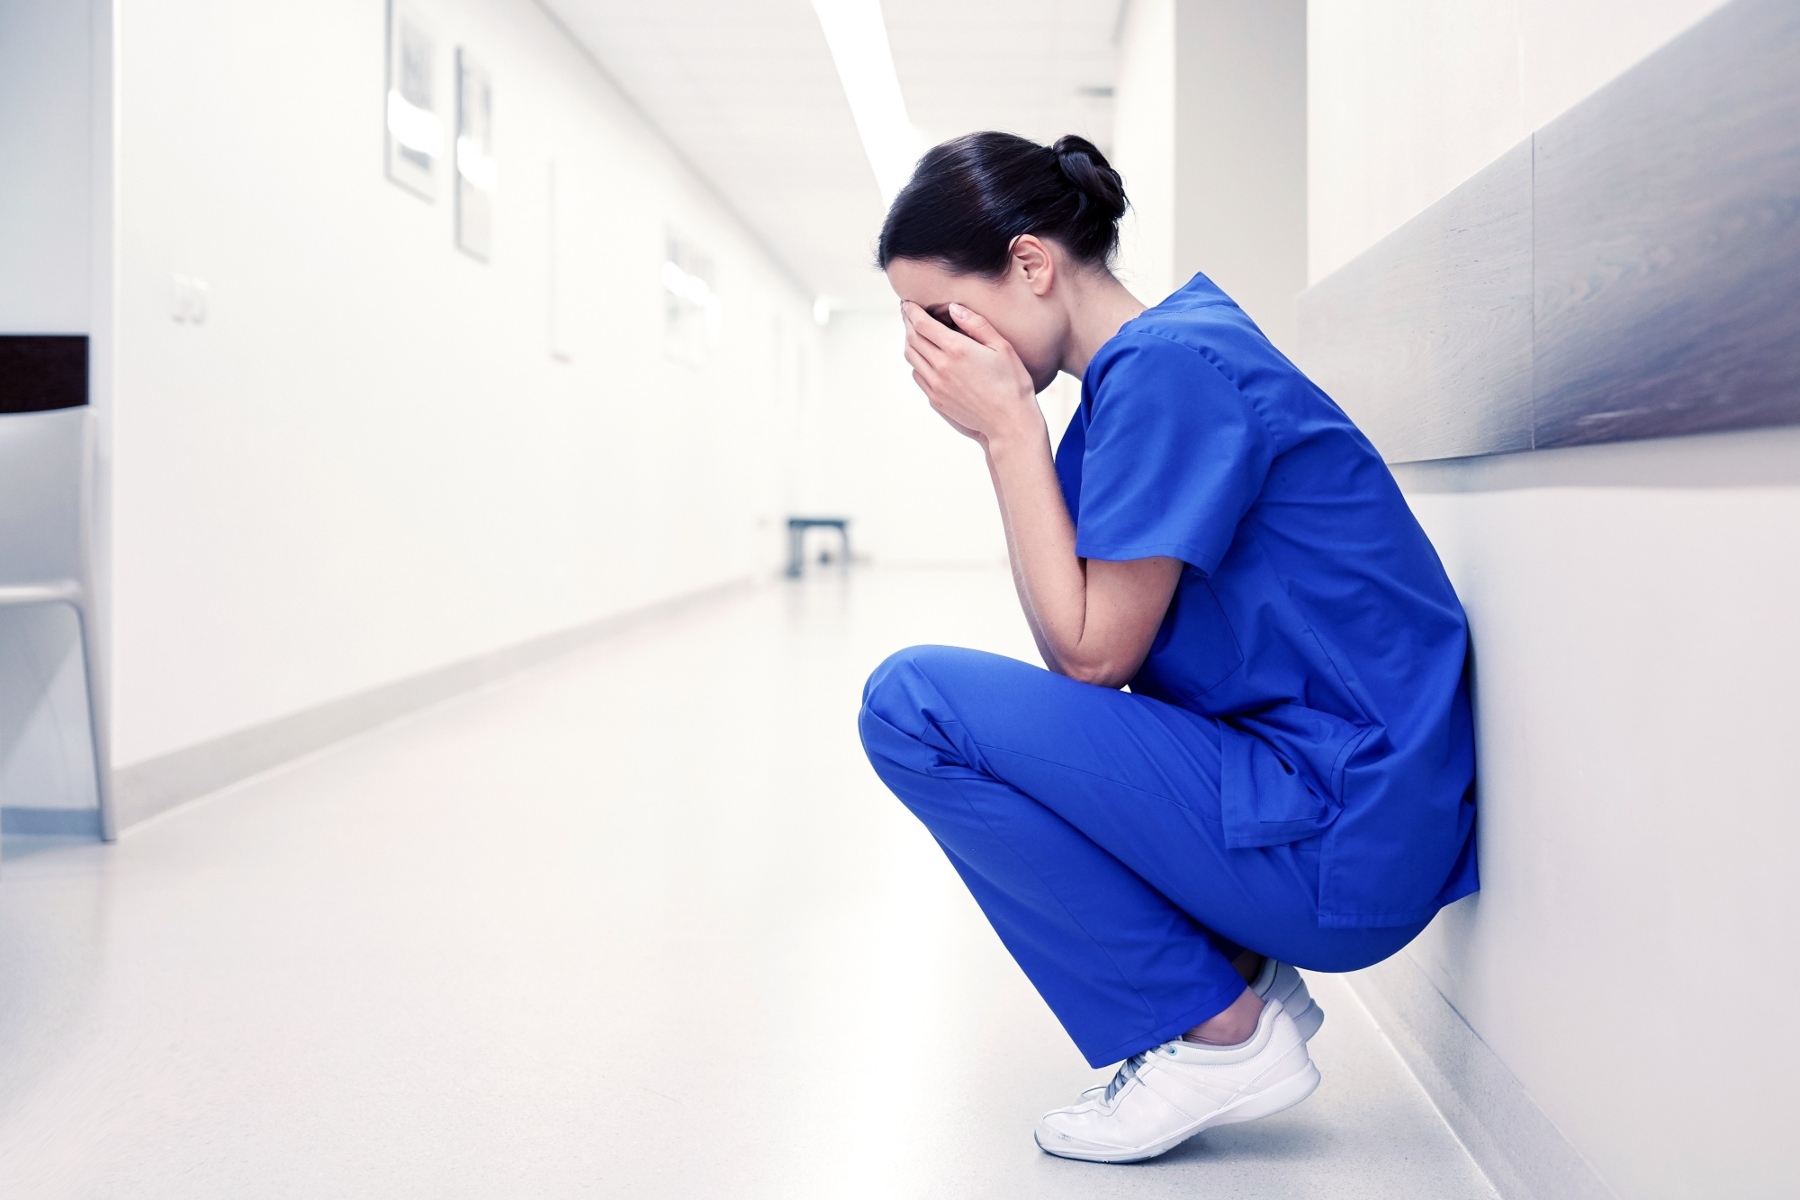 Σχεδόν 40% των γιατρών αναθεωρούν την καριέρα τους λόγω της ψυχικής τους υγείας